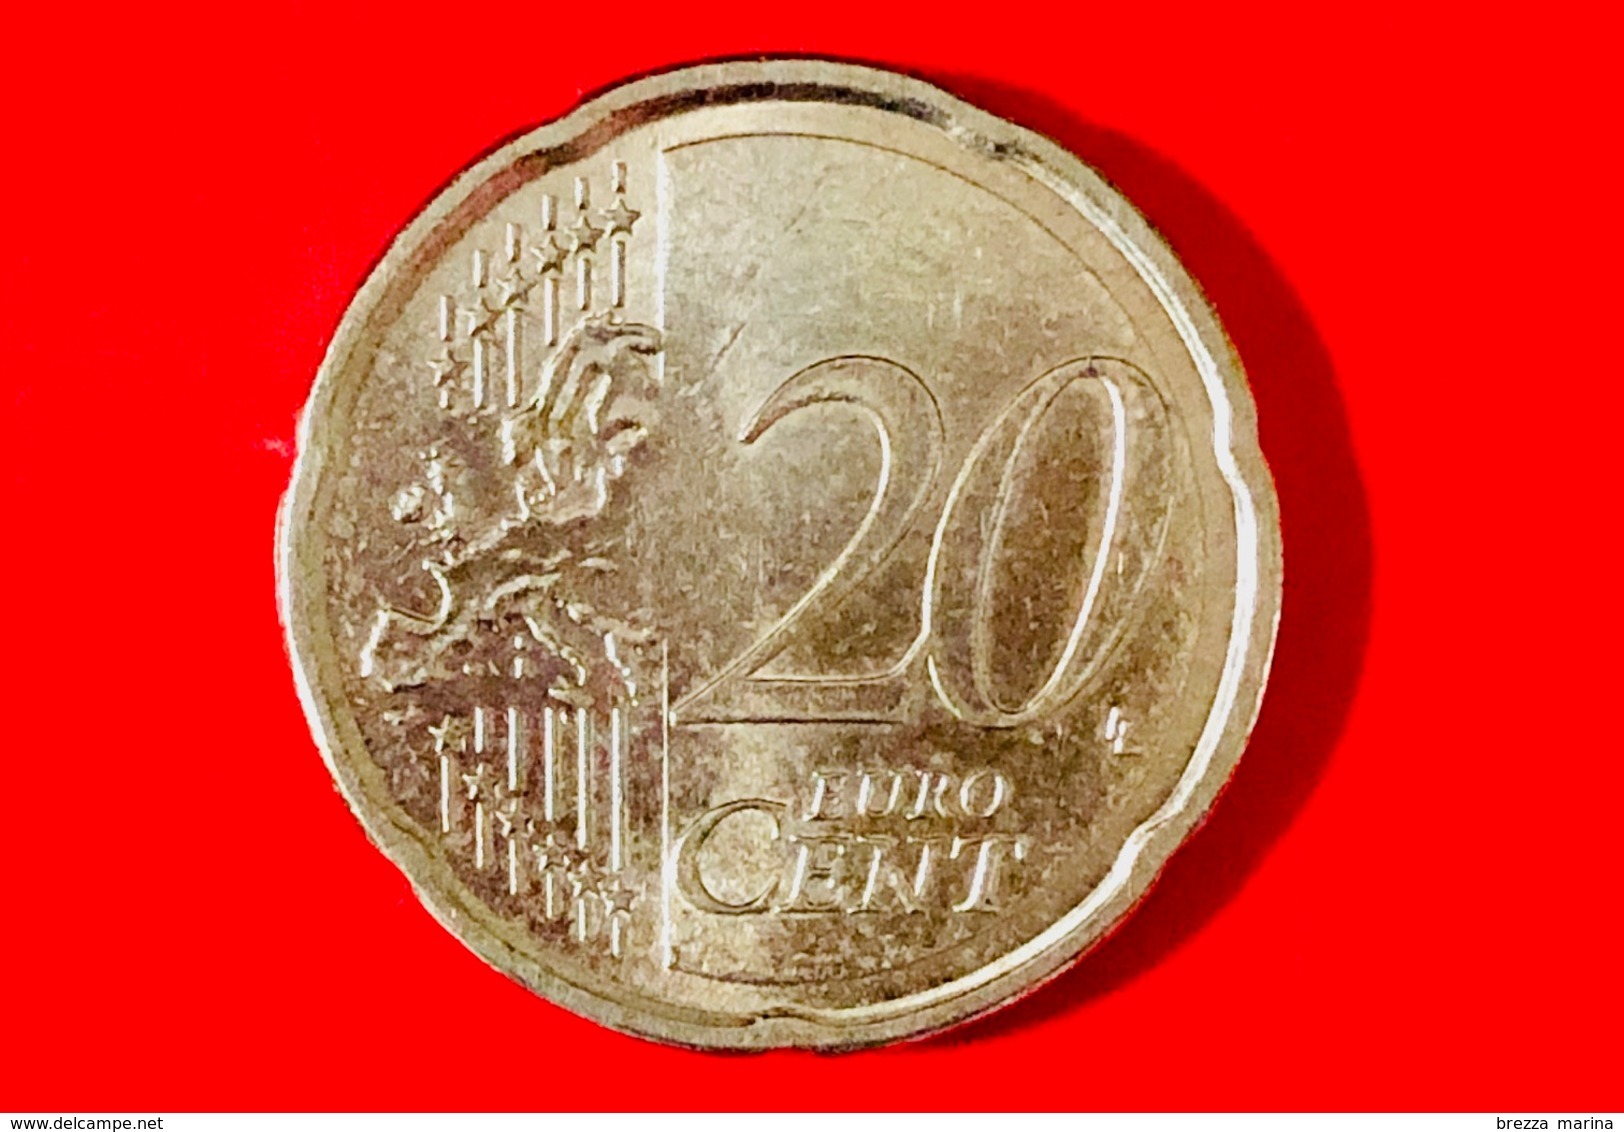 GRECIA - 2002 - Moneta - Ritratto Di Ioannis Capodistrias (1776-1831), Politico - Euro - 0.20 - Grecia